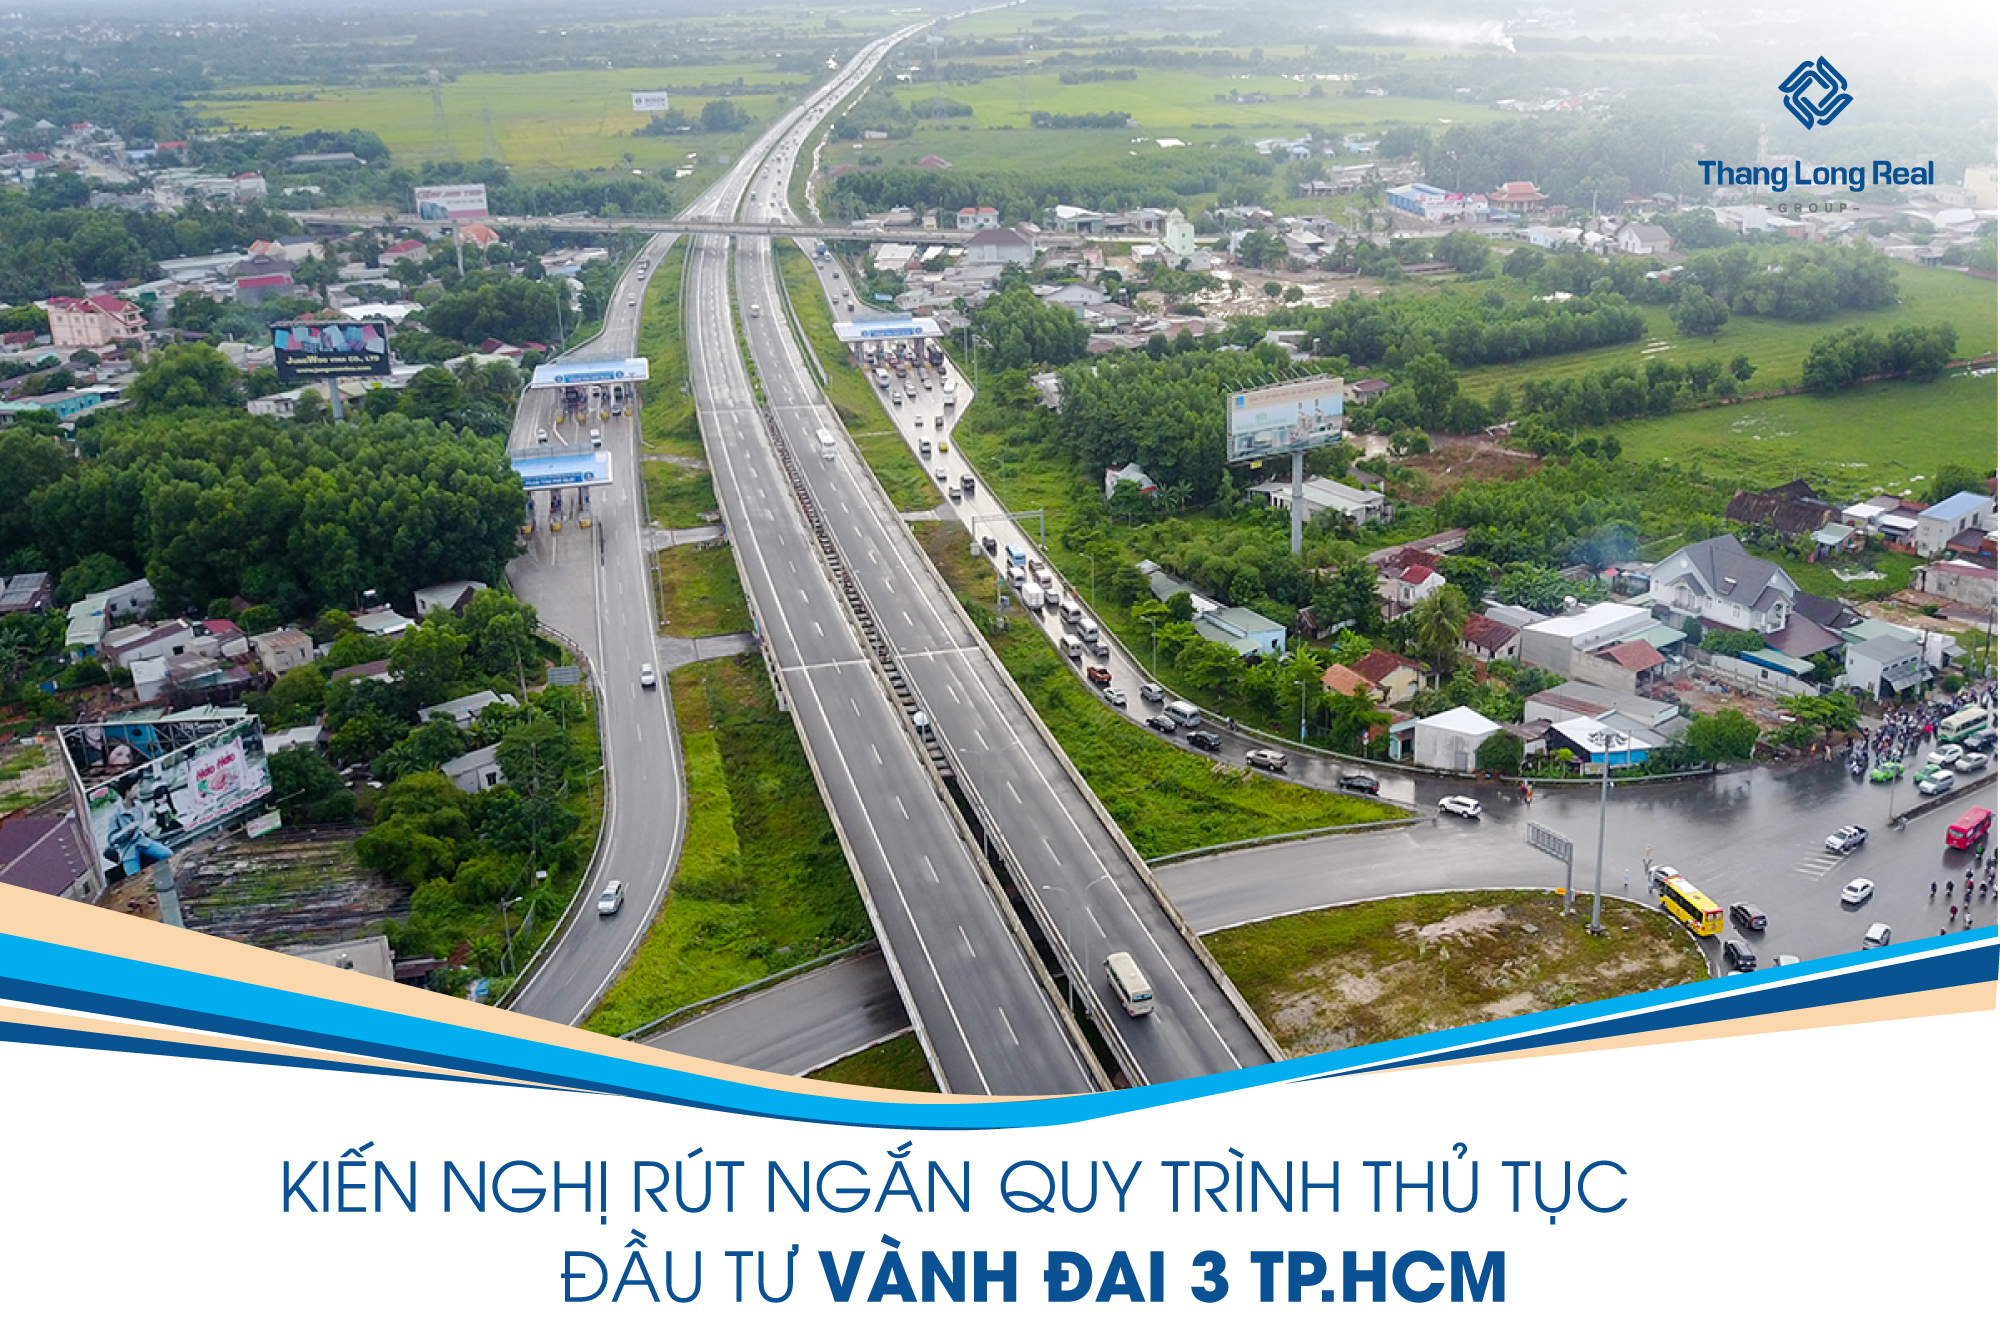 Kiến nghị rút ngắn quy trình thủ tục đầu tư Vành Đai 3 thành phố Hồ Chí Minh